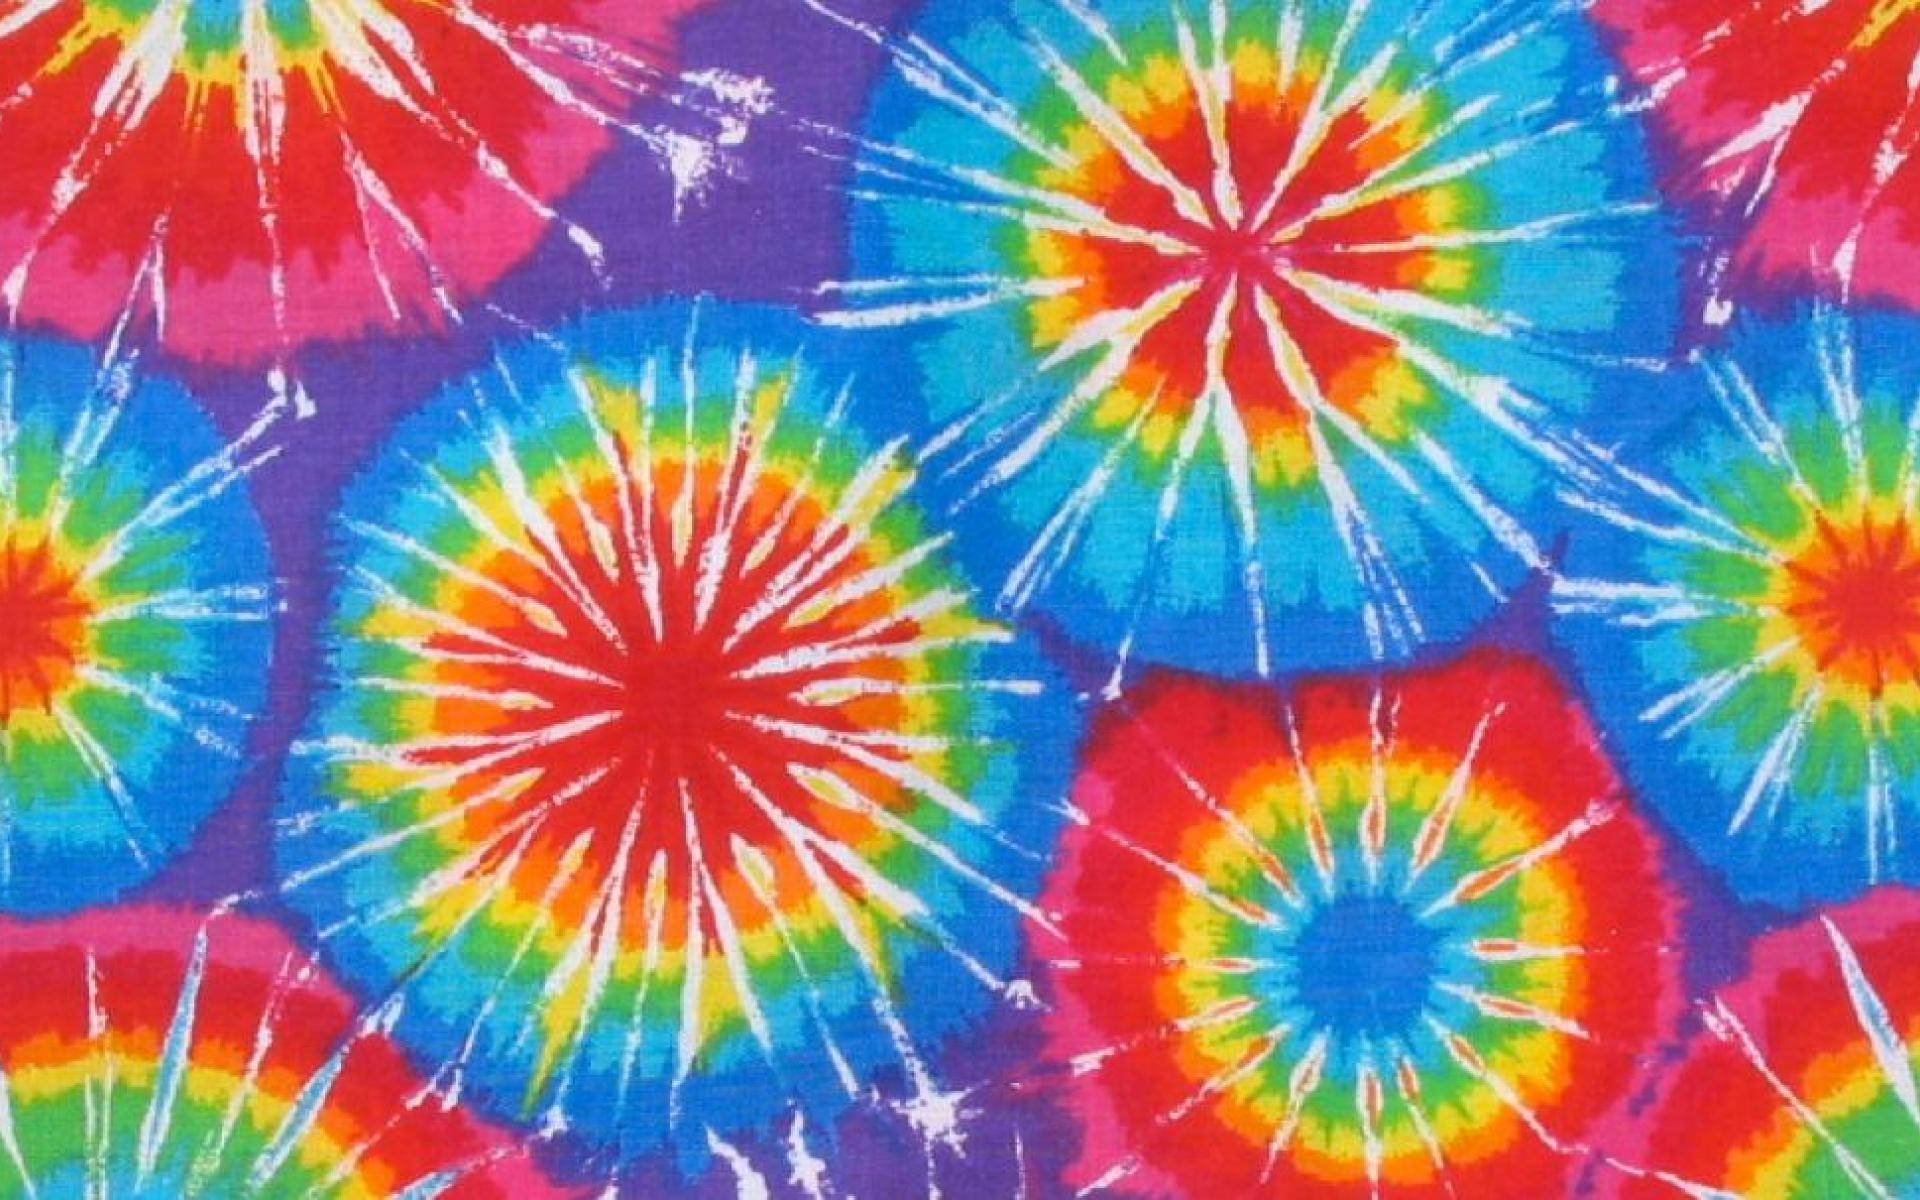 Free Tie Dye Wallpaper Downloads, [100+] Tie Dye Wallpapers for FREE |  